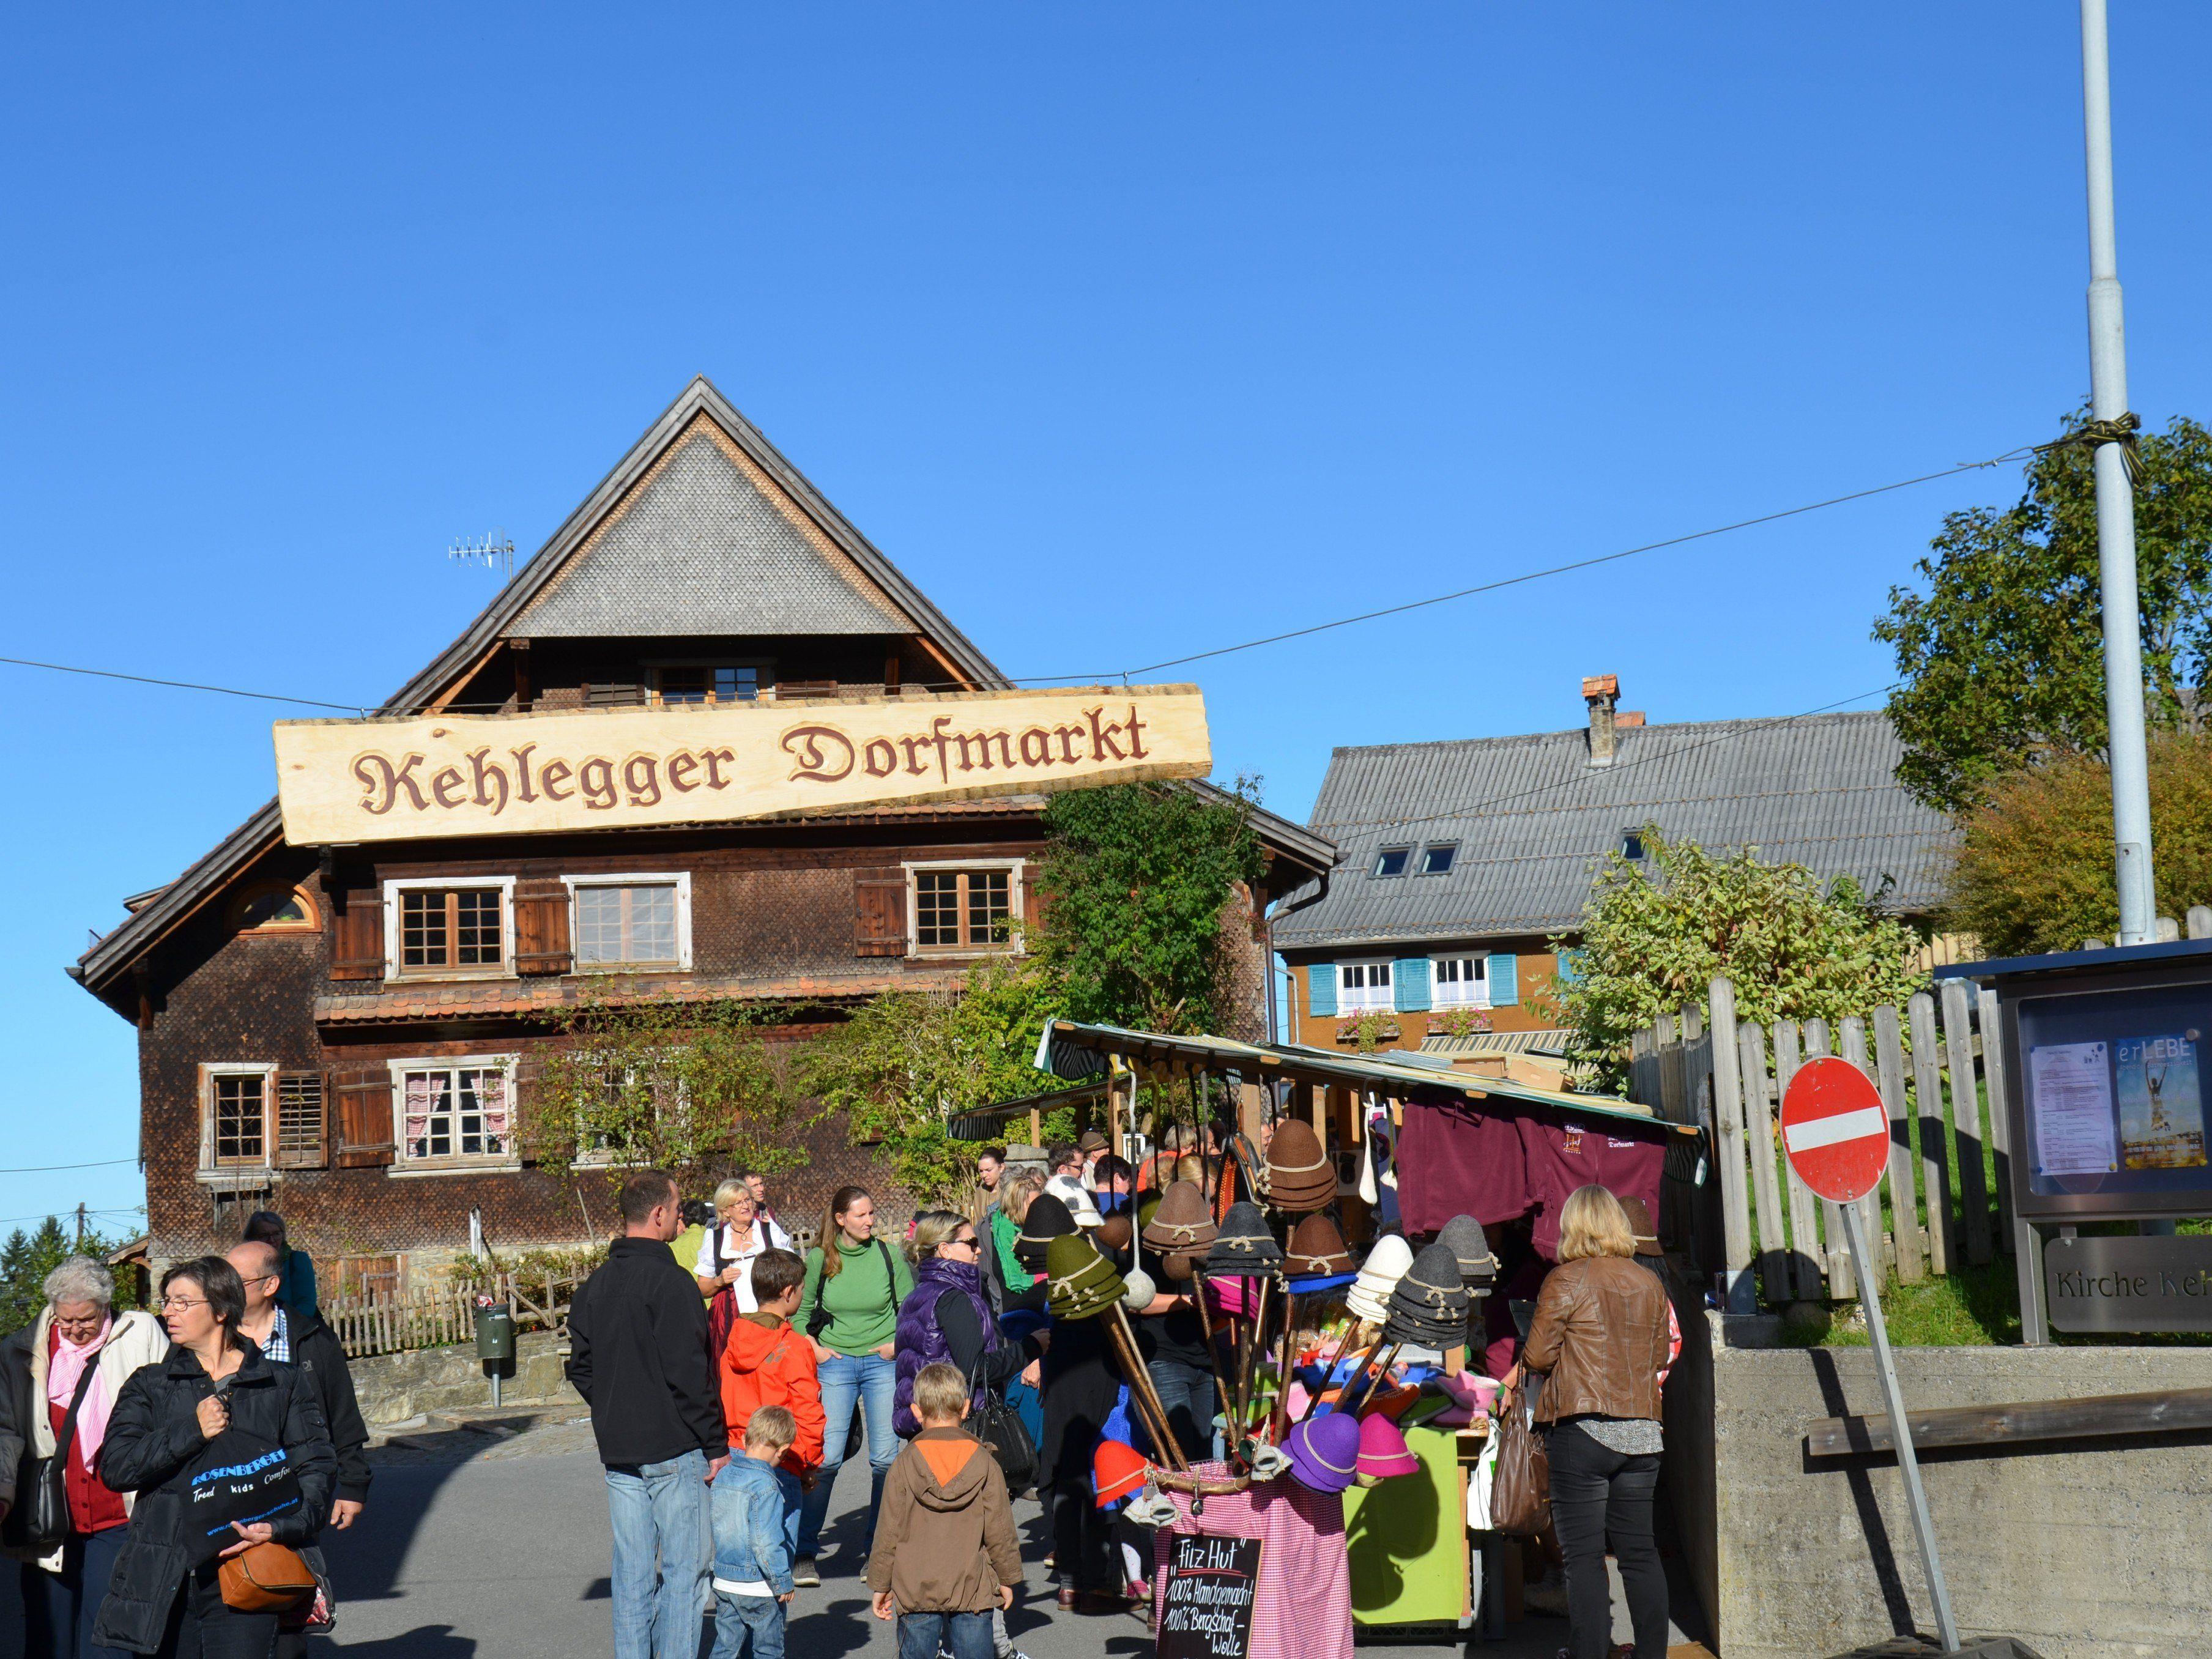 2. Kehlegger Dorfmarkt